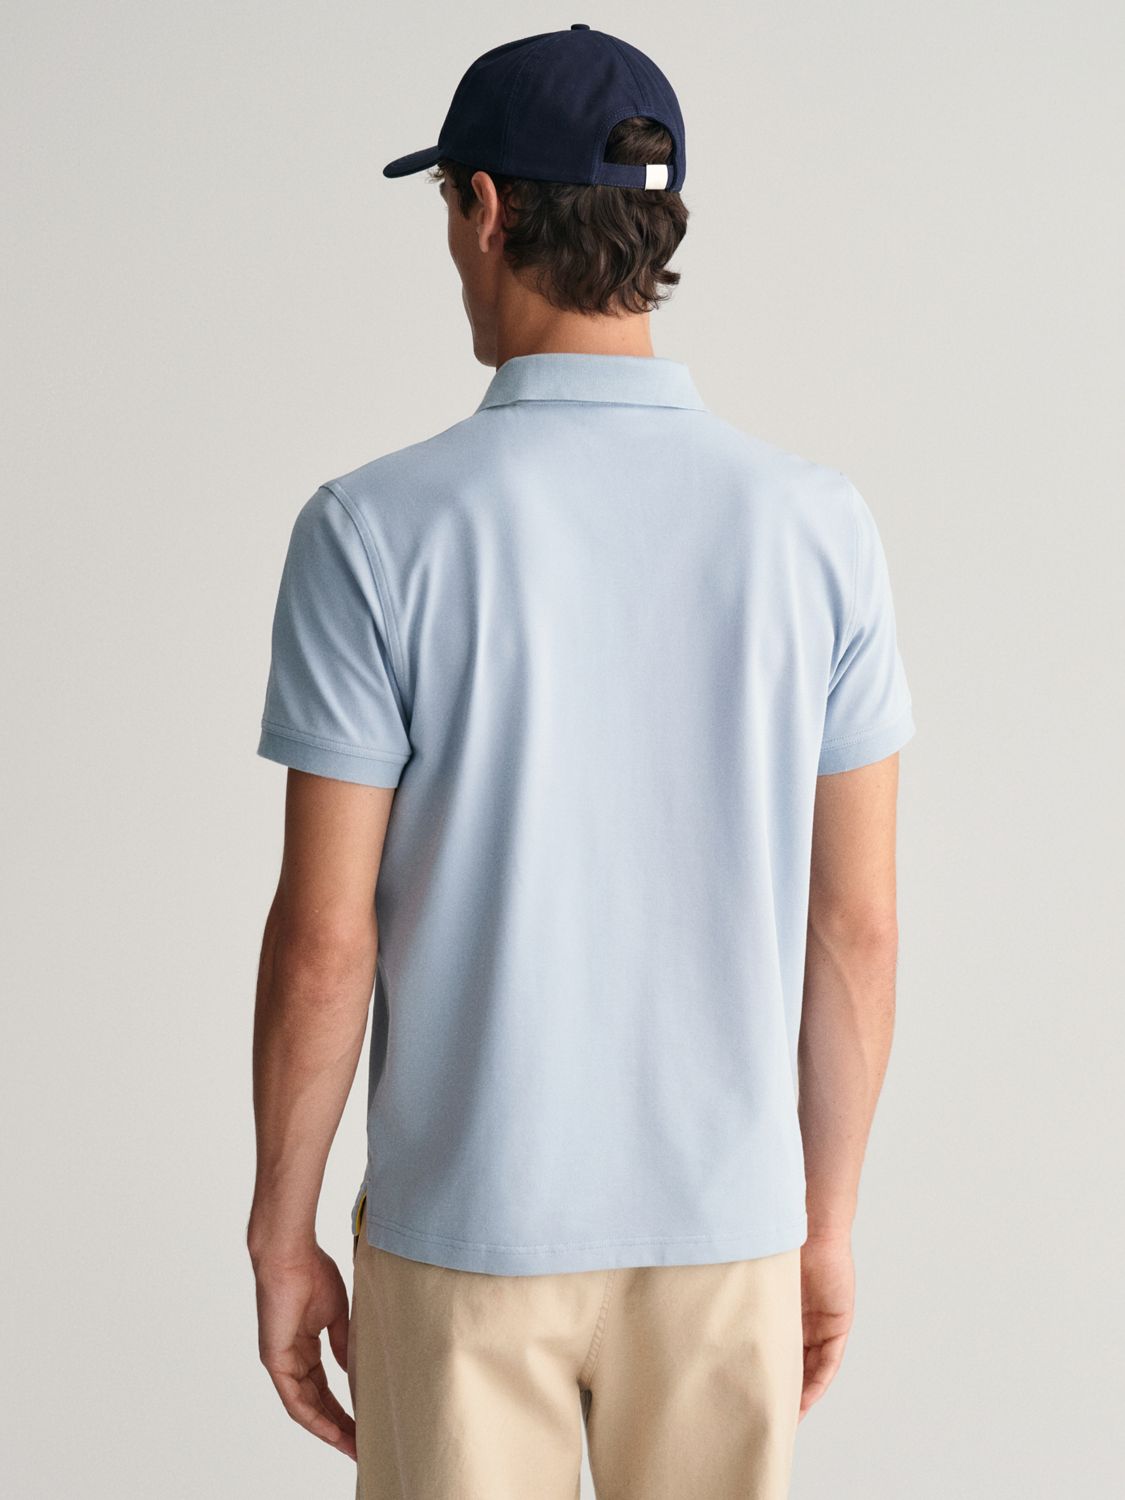 GANT Contrast Pique Polo Shirt, Dove Blue, L